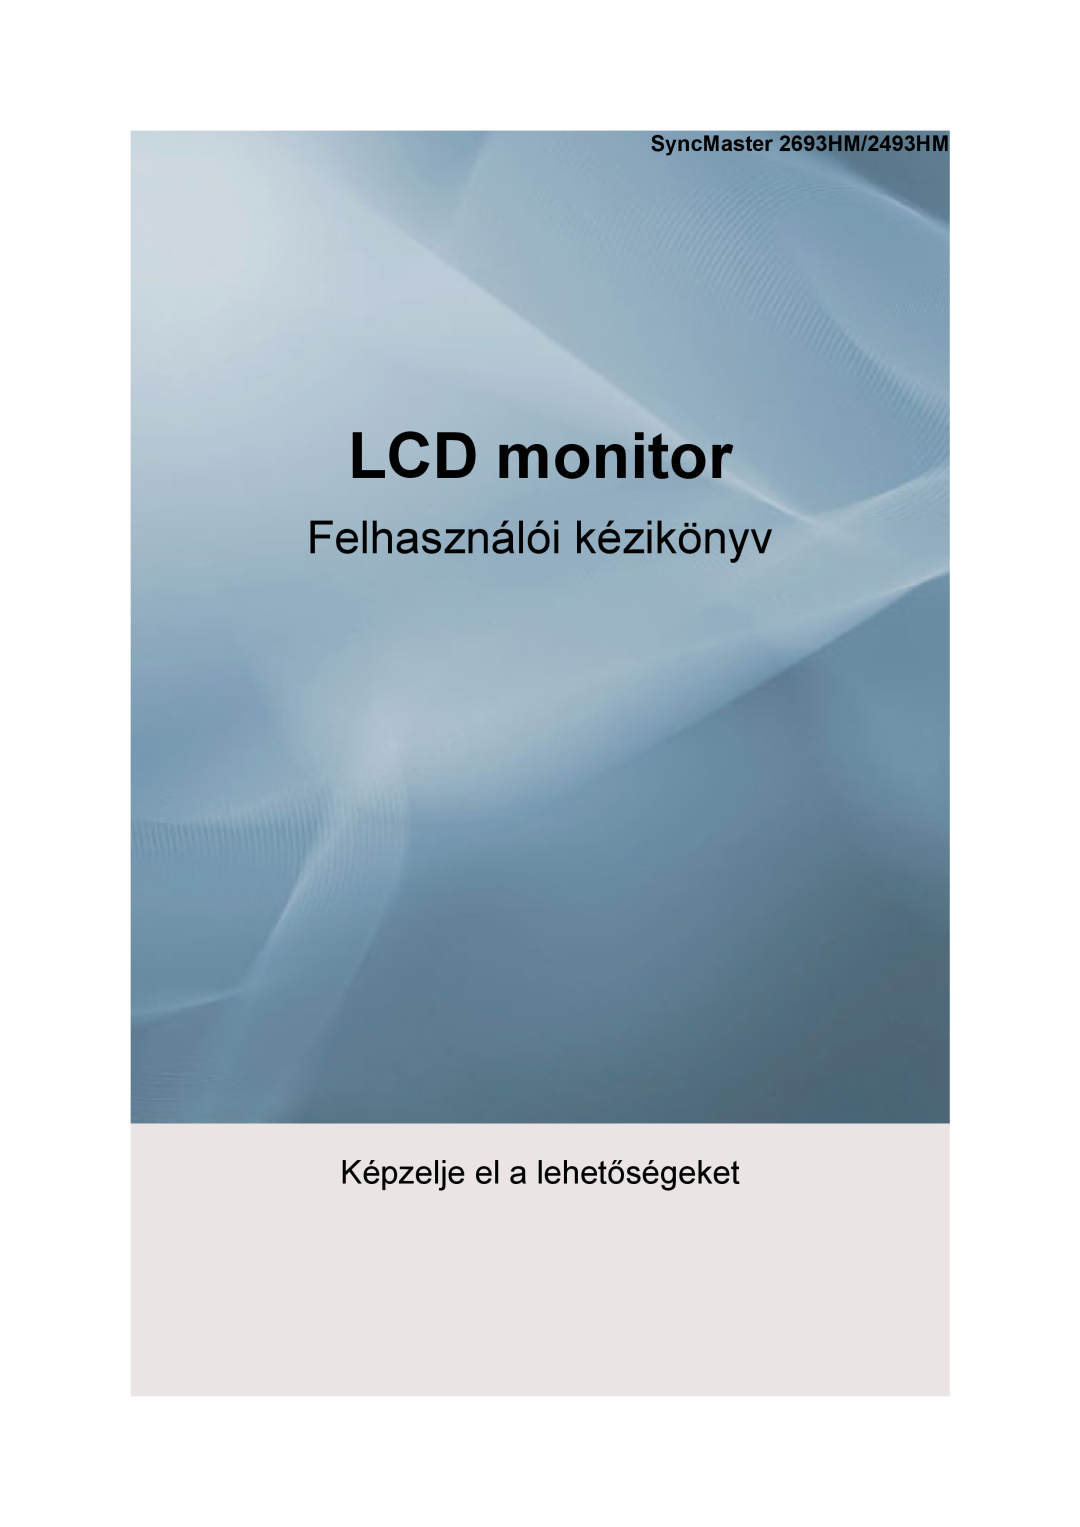 Samsung LS32BHLNB/EDC, LS26KIERBV/EDC, LS24KIEEFV/EDC, LS24KIERBQ/EDC manual Lcd Monitor, quick start guide, 2493HM, 2693HM 